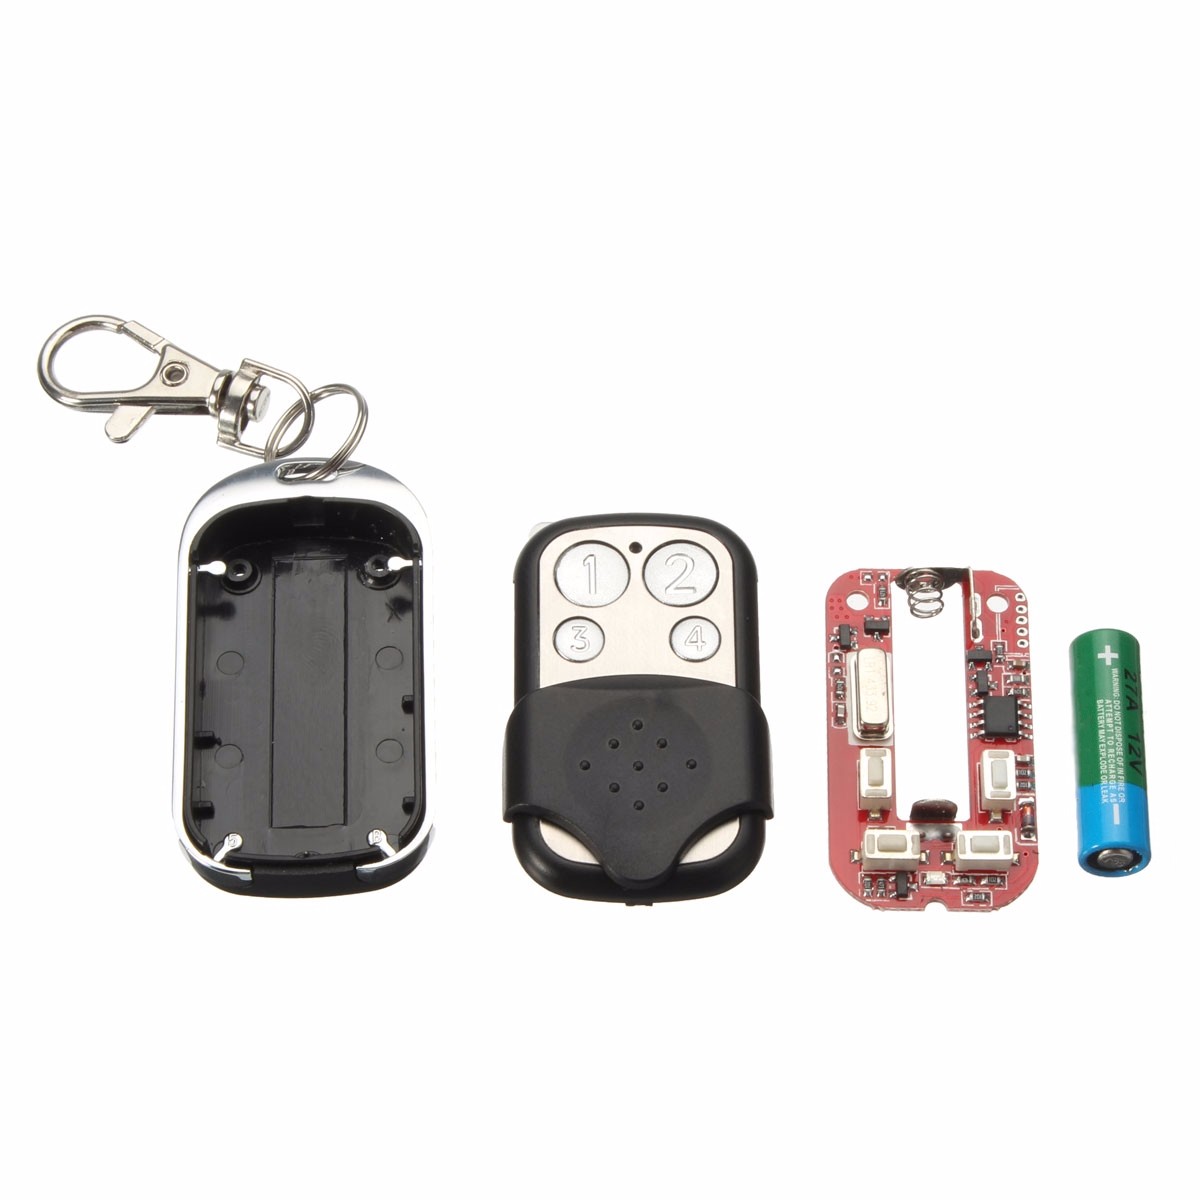 4-Button-433MHz-Garage-Gate-Key-Remote-Control-For-Marantec-D302D304D313-Comfort-220-1060990-8